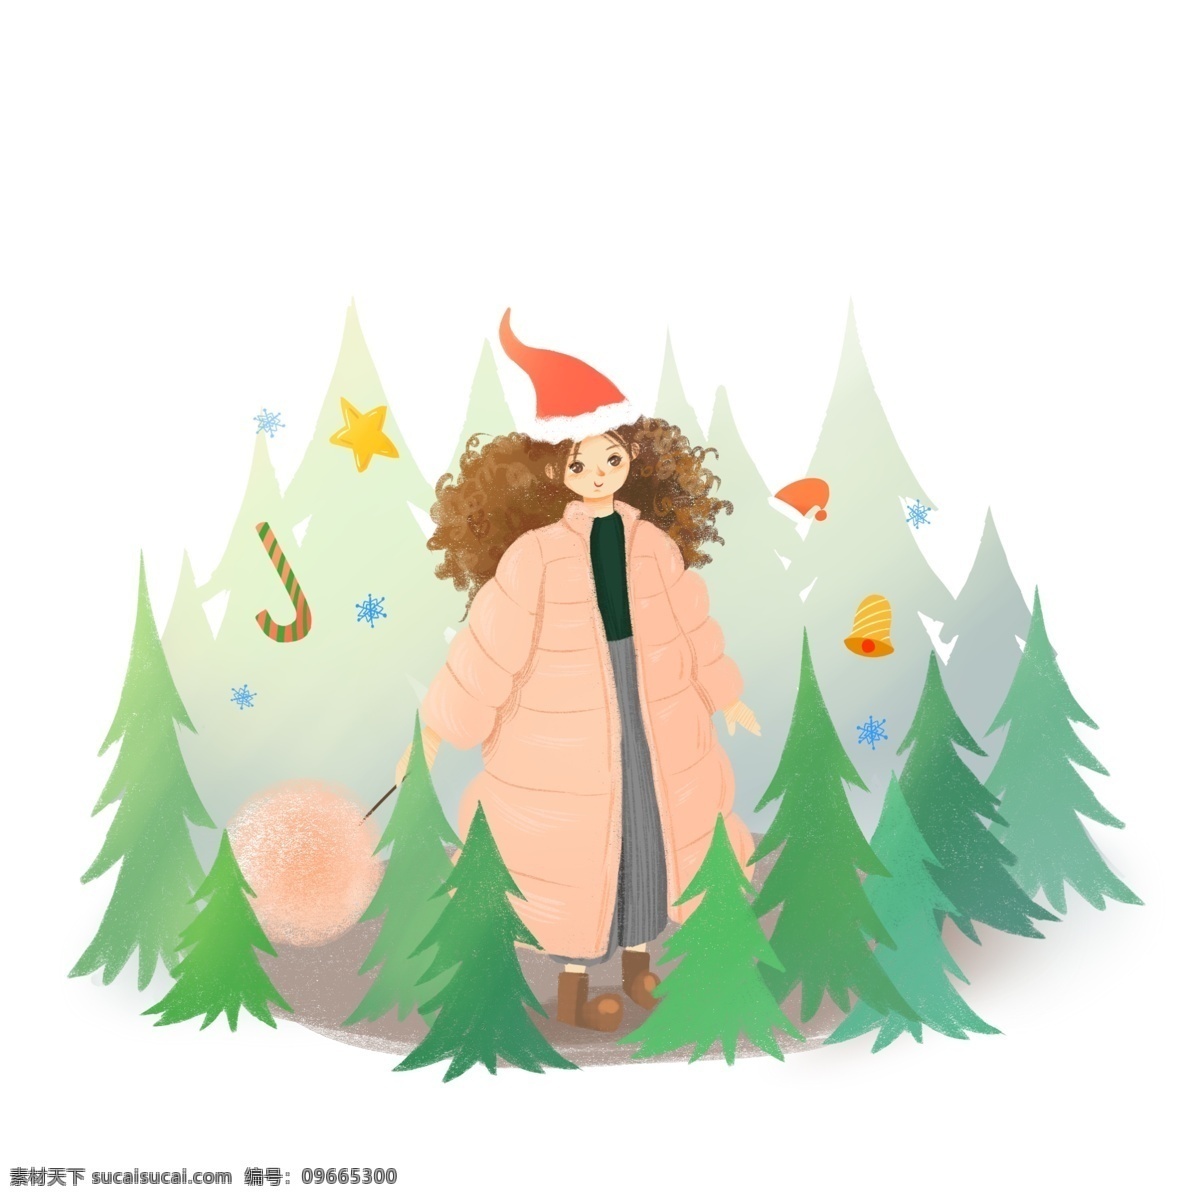 圣诞节 小森 林松 树林 美 少女 圣诞 圣诞夜 圣诞树 圣诞帽 星星 铃铛 美女 女孩 戴 帽 女 号 小树林 松树 可爱